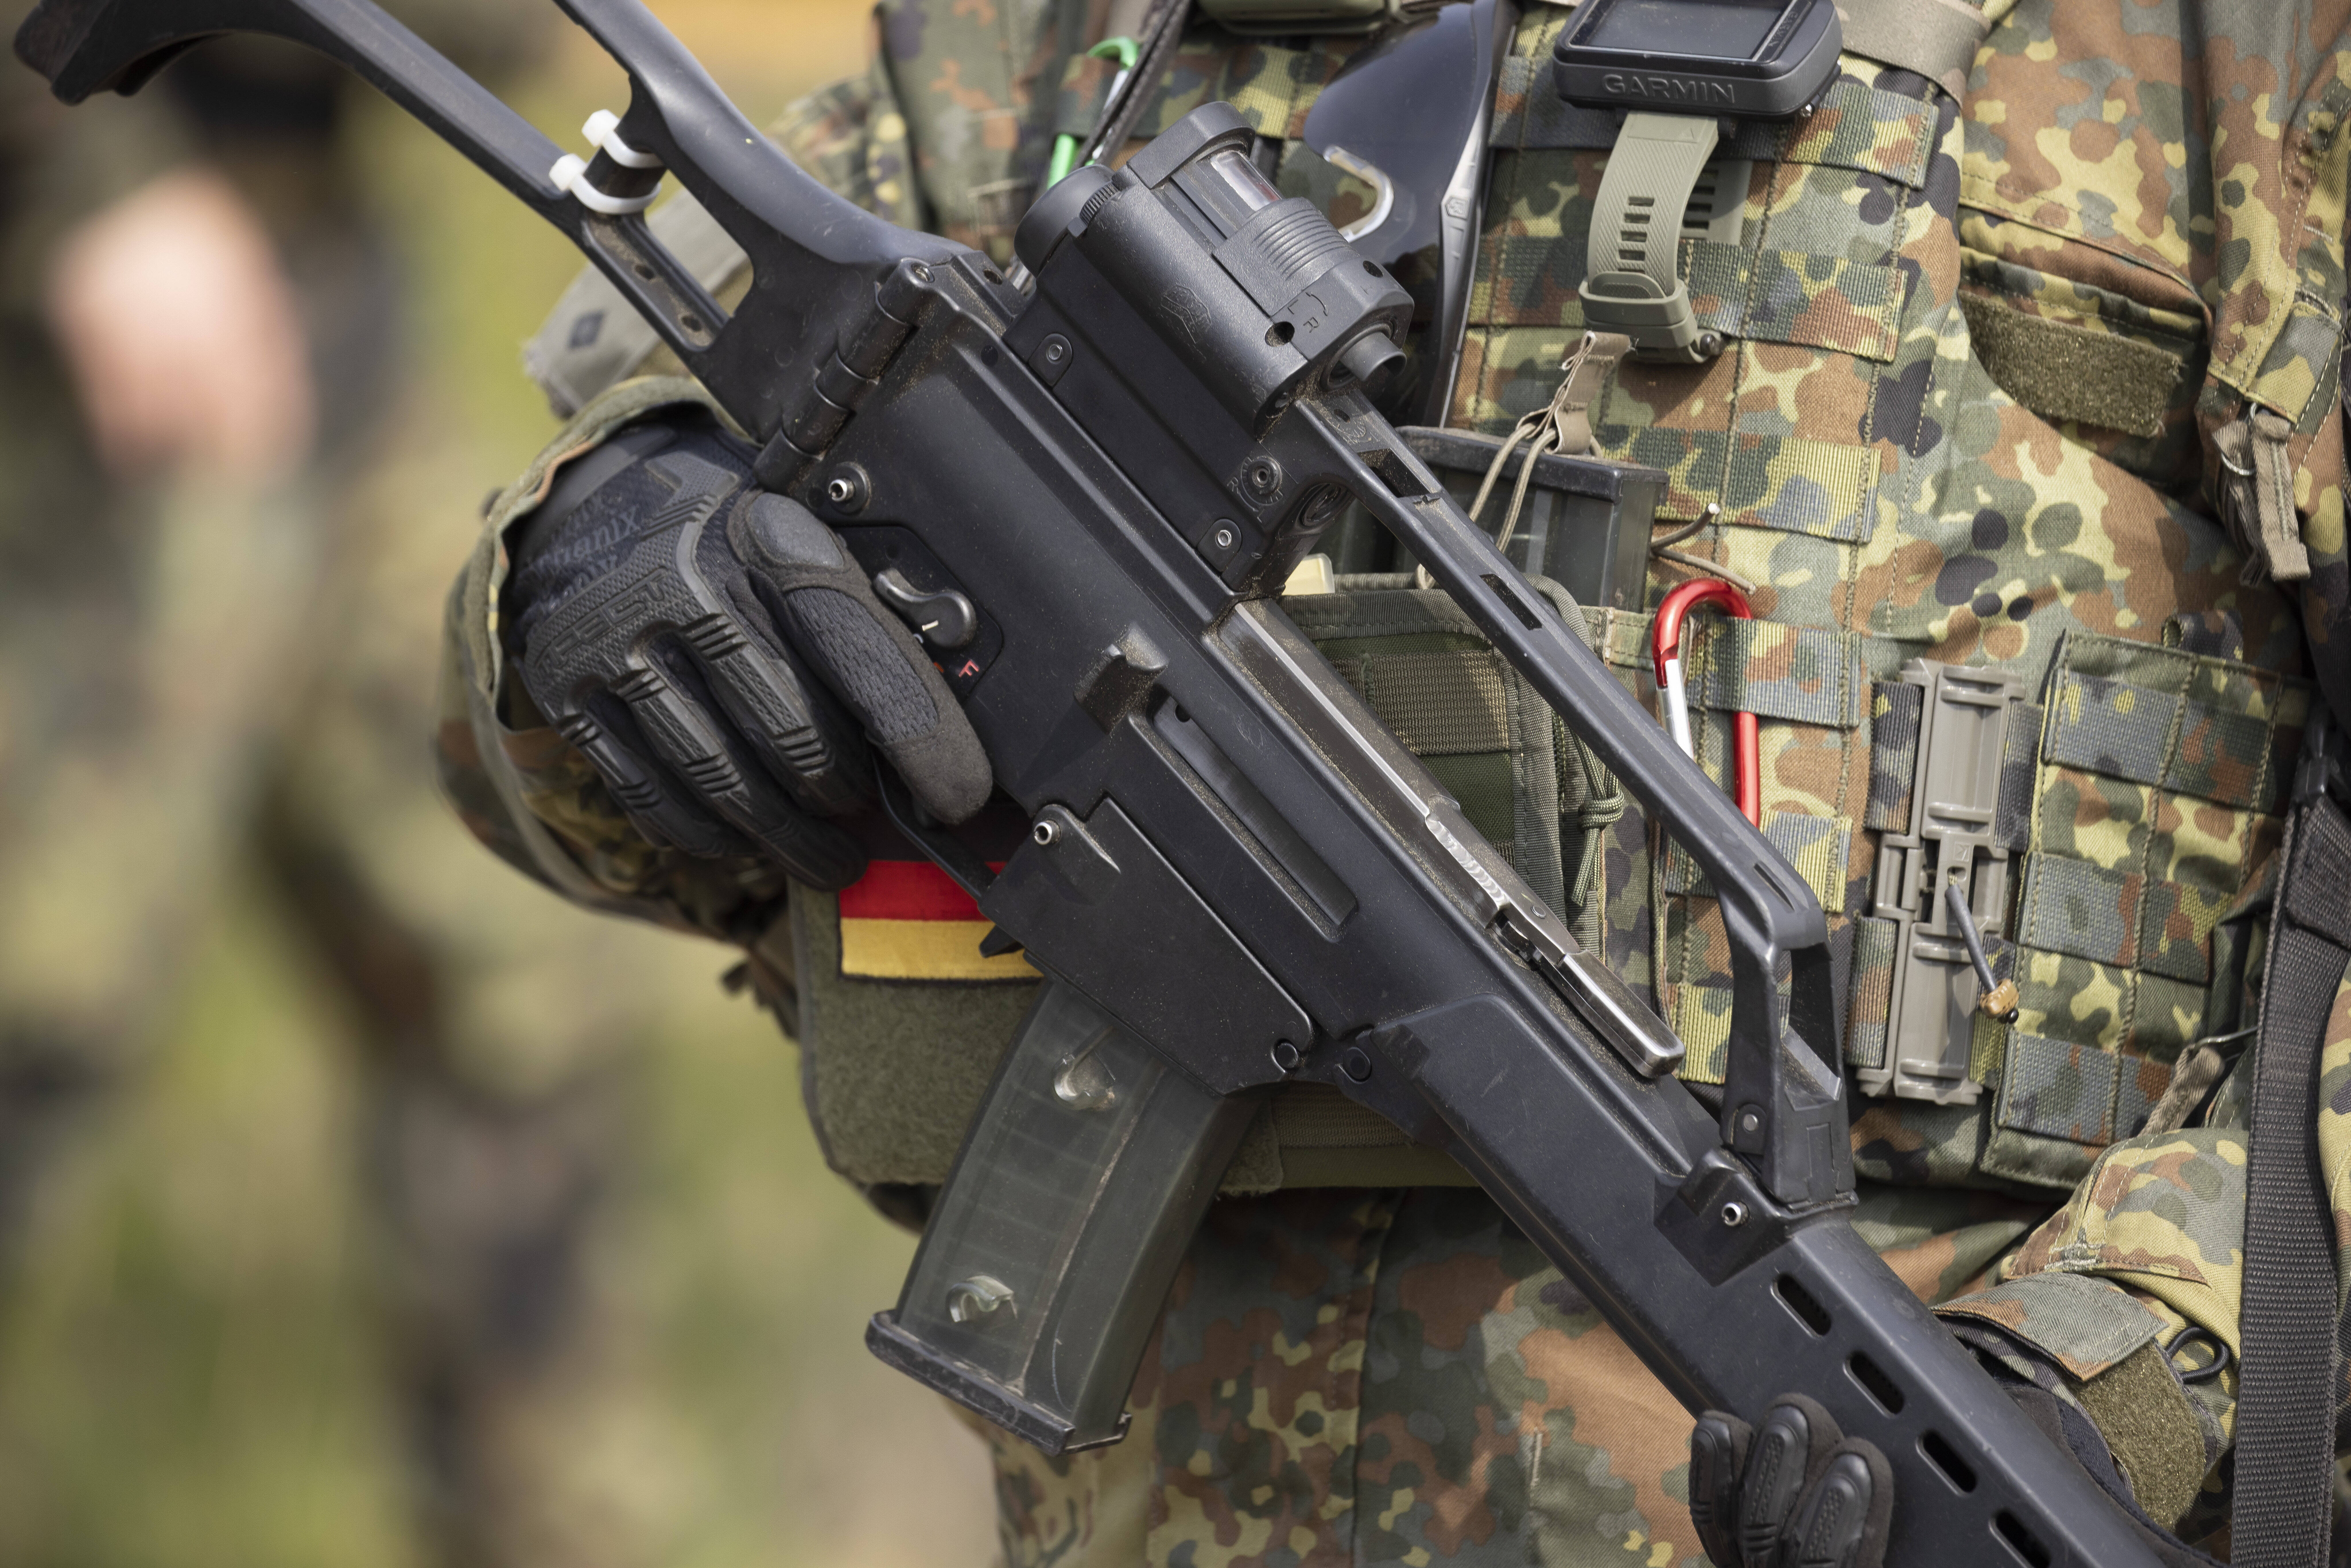 100 Milliarden Sondervermögen für die Bundeswehr: Damit finanzieren wir notwendige Investitionen zur Ausstattung unserer Streitkräfte über den regulären Haushalt hinaus.